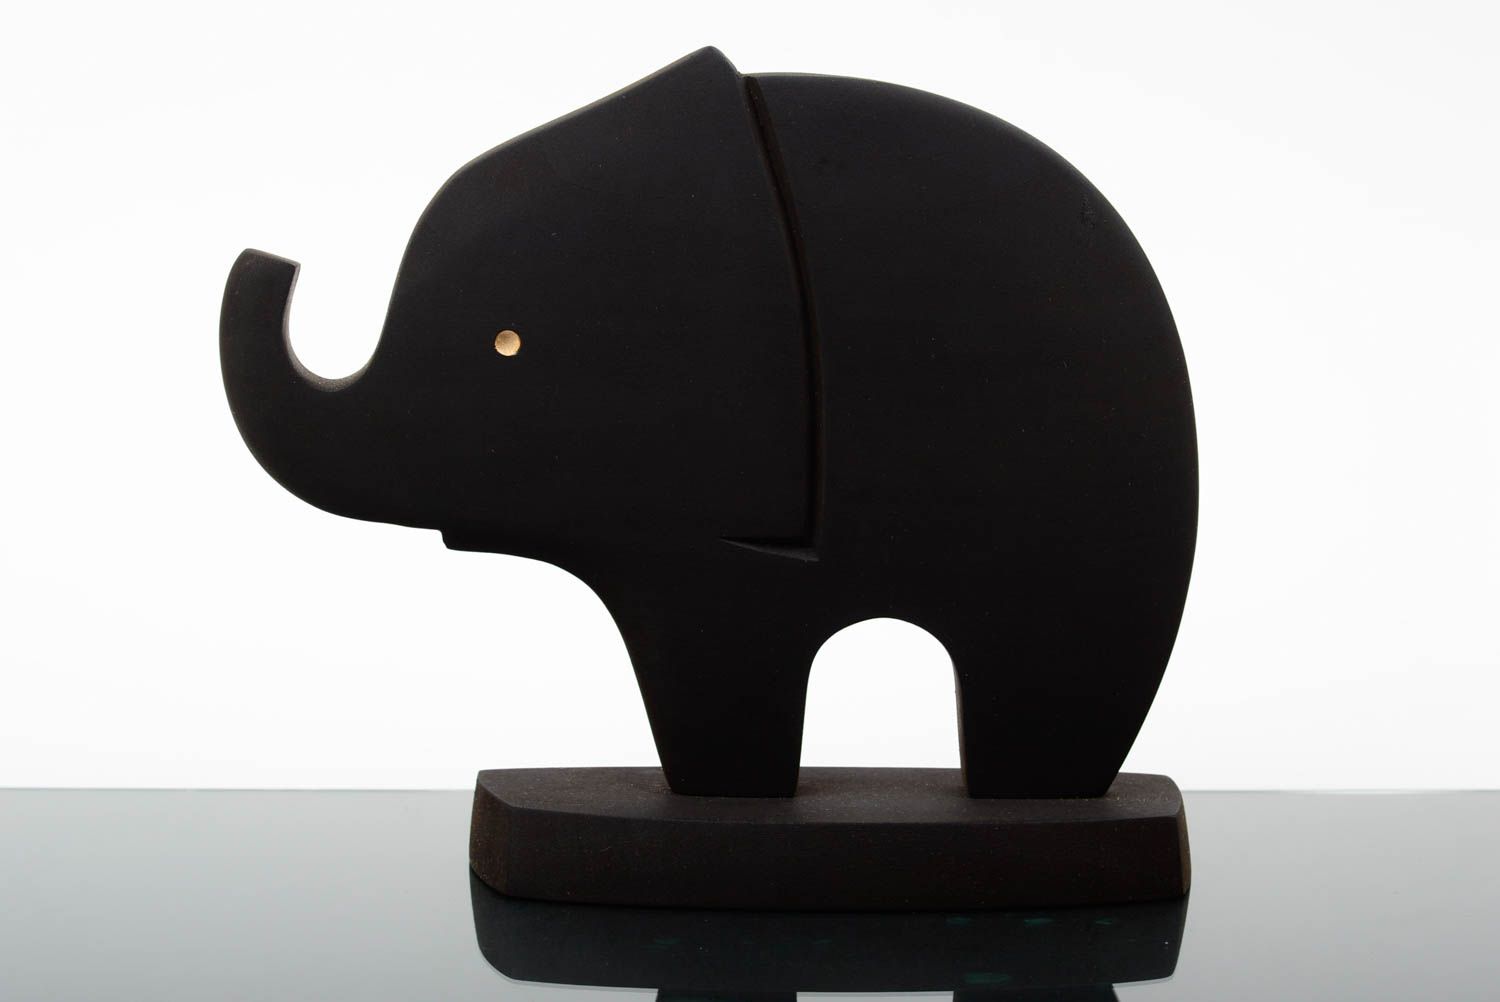 Статуэтка из дерева ручной работы экологическая для декора черный слон из ясеня фото 1